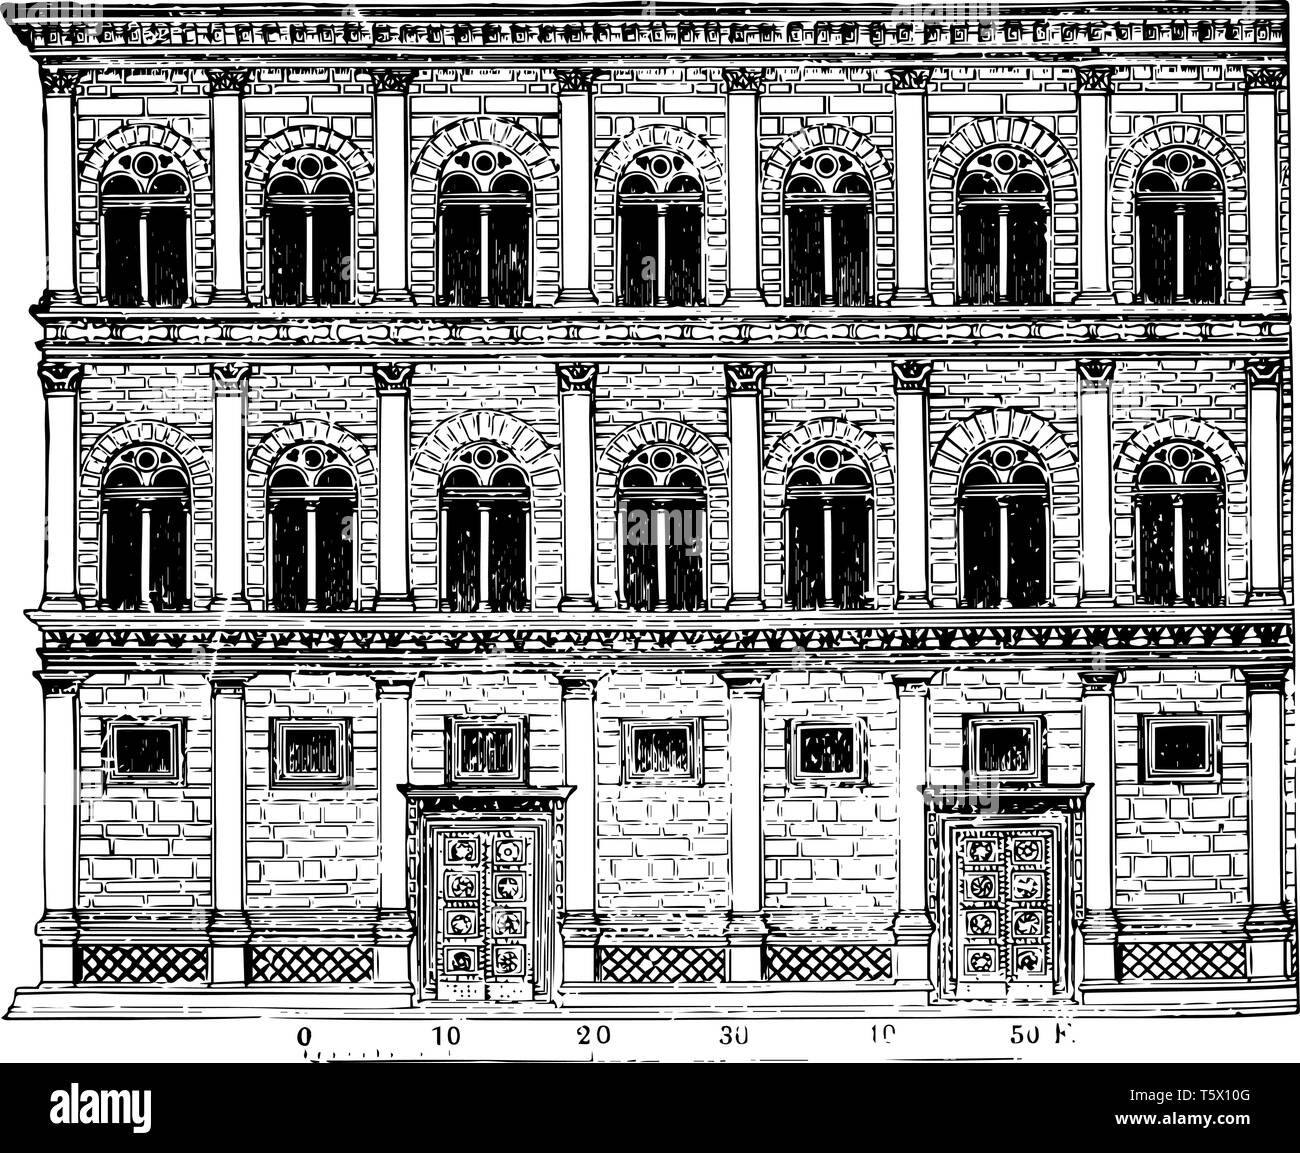 Rucellai Palast Kreationen von Alberti bilden eine Klasse für sich Florentiner Palast Architektur die Besonderheiten des florentinischen Stil nicht mit einem c Display Stock Vektor